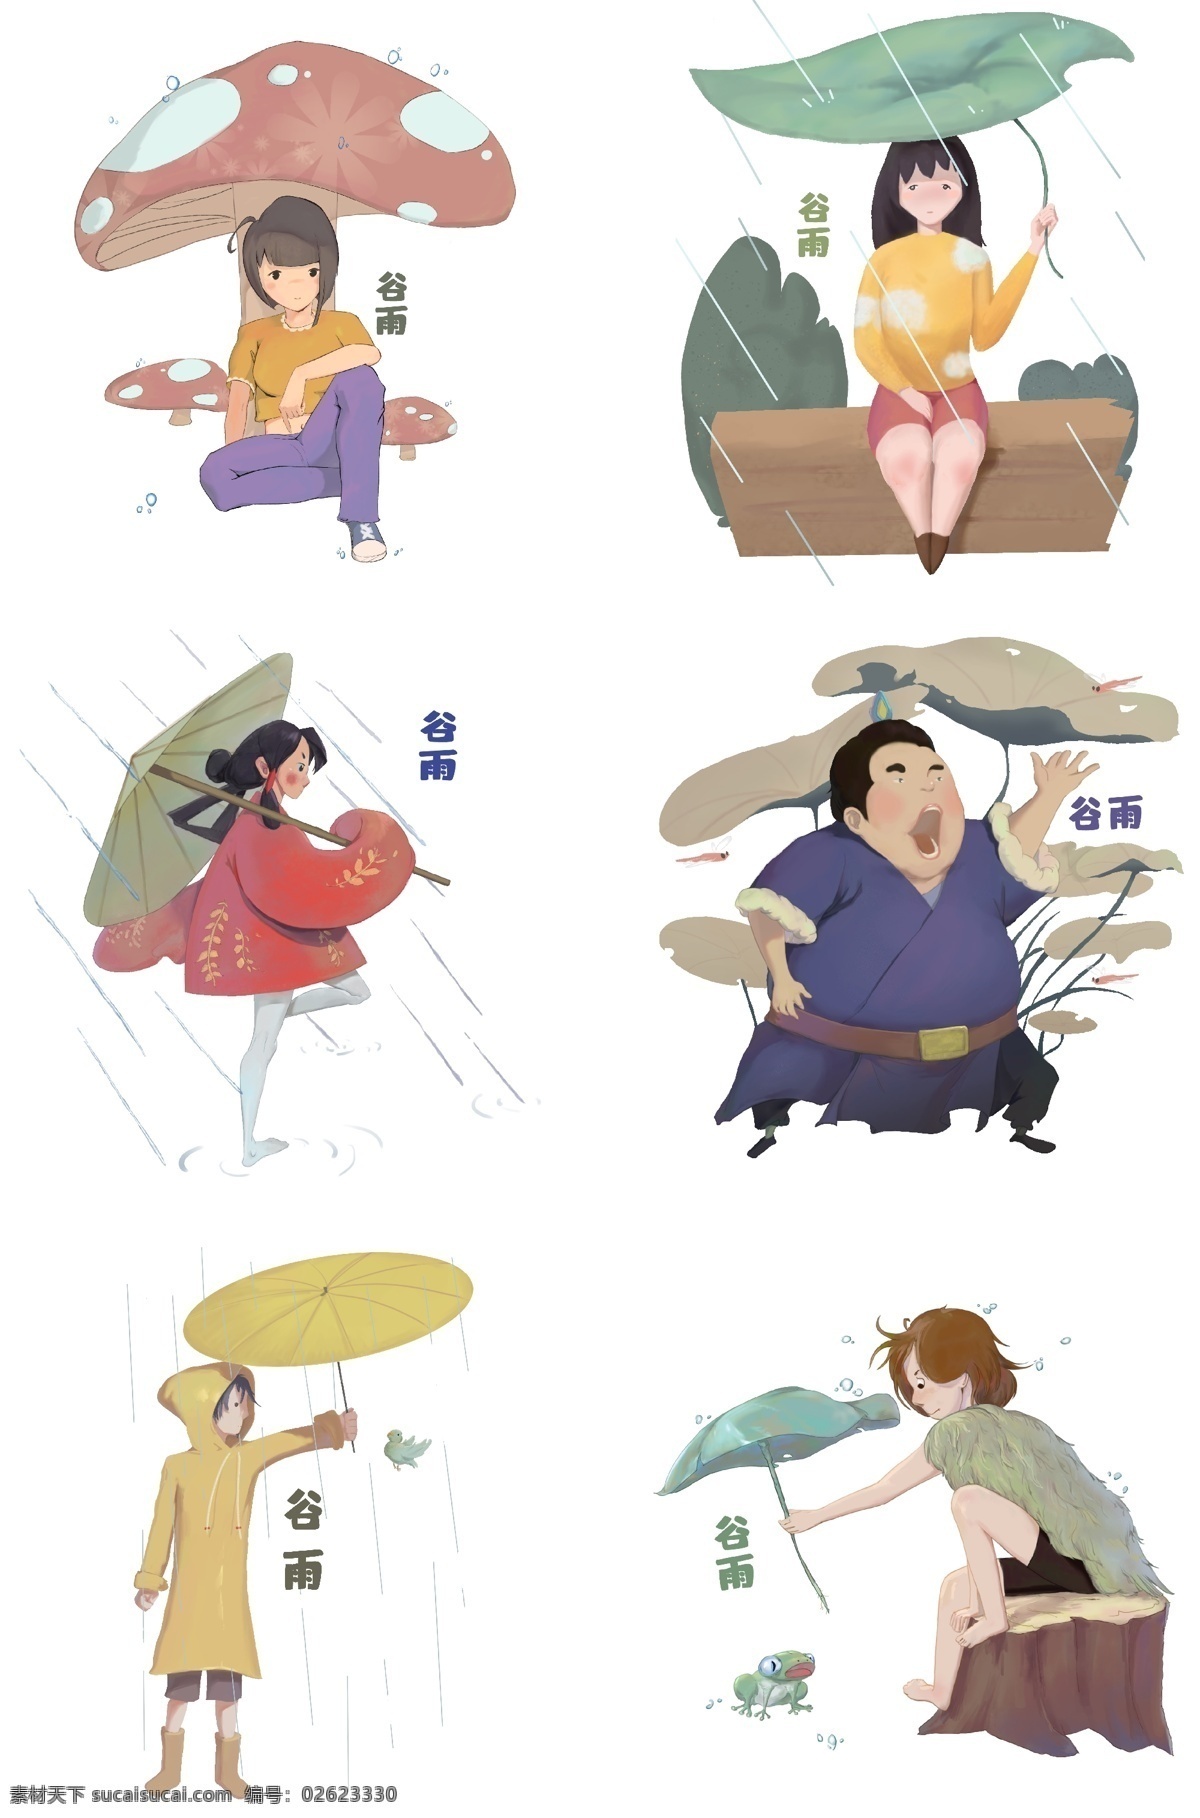 谷雨 女孩 人物 插画 合集 下雨天气 淋雨的小女孩 植物装饰 卡通人物 打伞的女孩